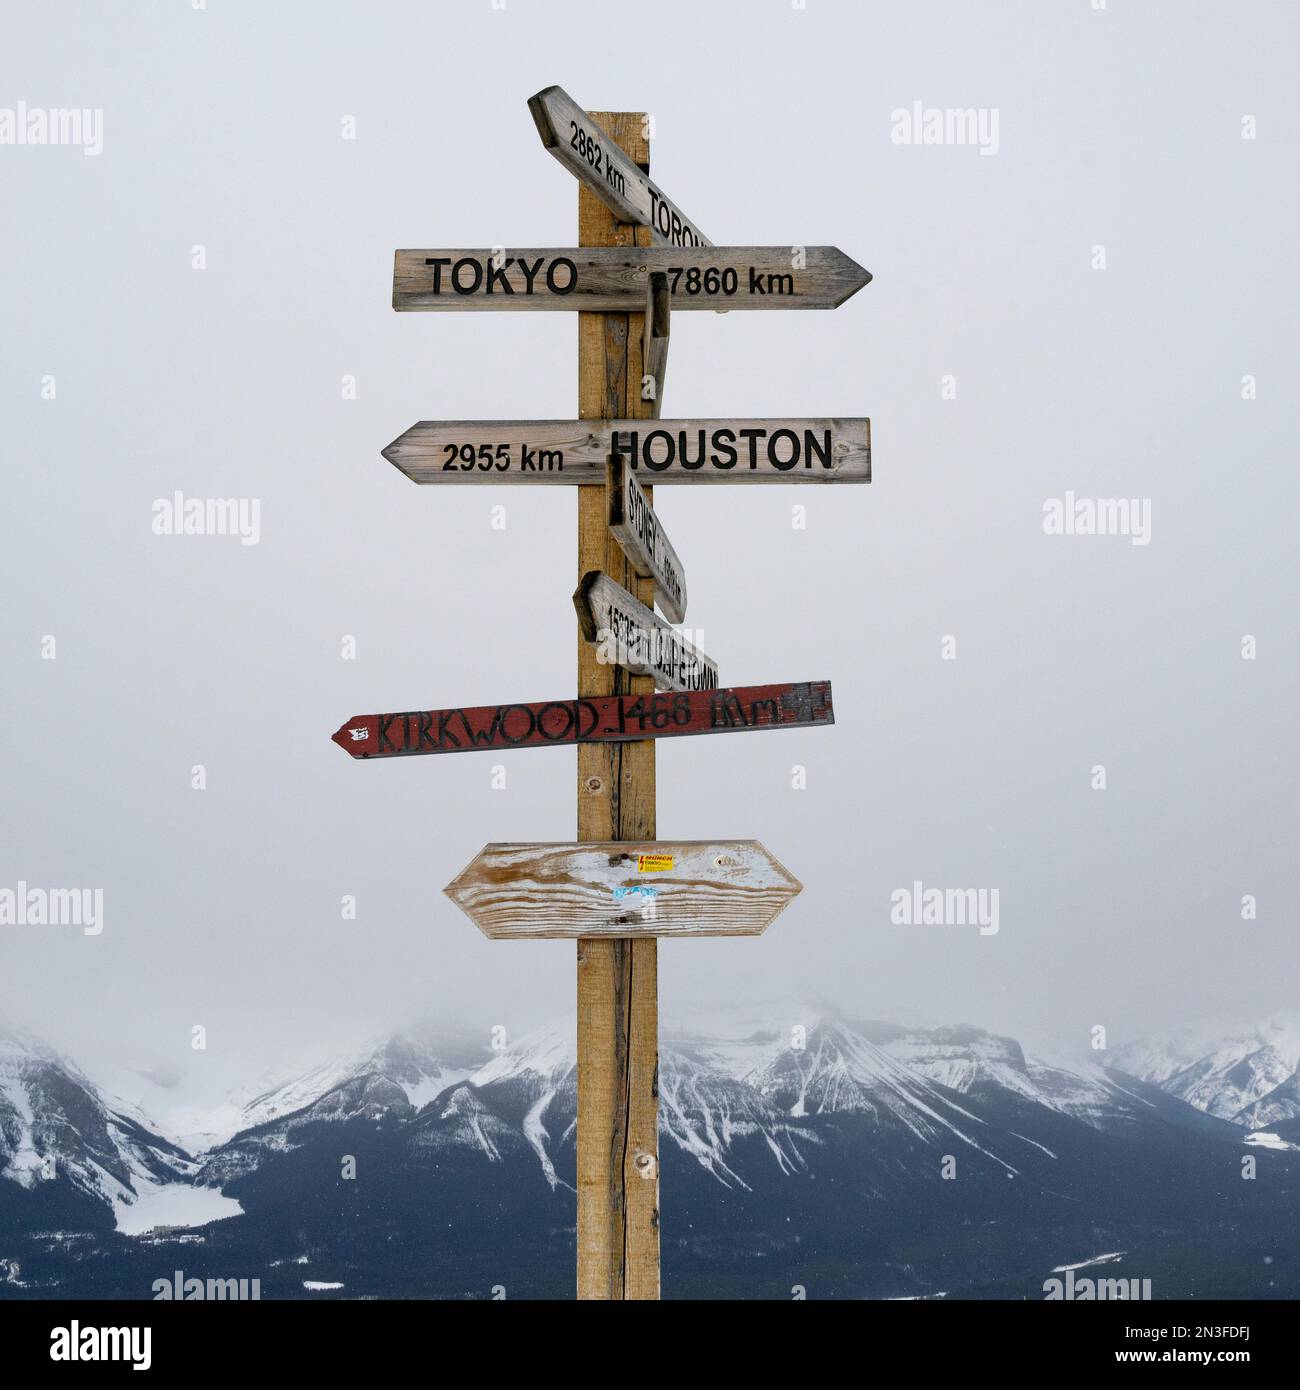 Poste avec des destinations internationales dans une station de ski dans le parc national Banff, Alberta, Canada ; Improvement District No. 9, Alberta, Canada Banque D'Images